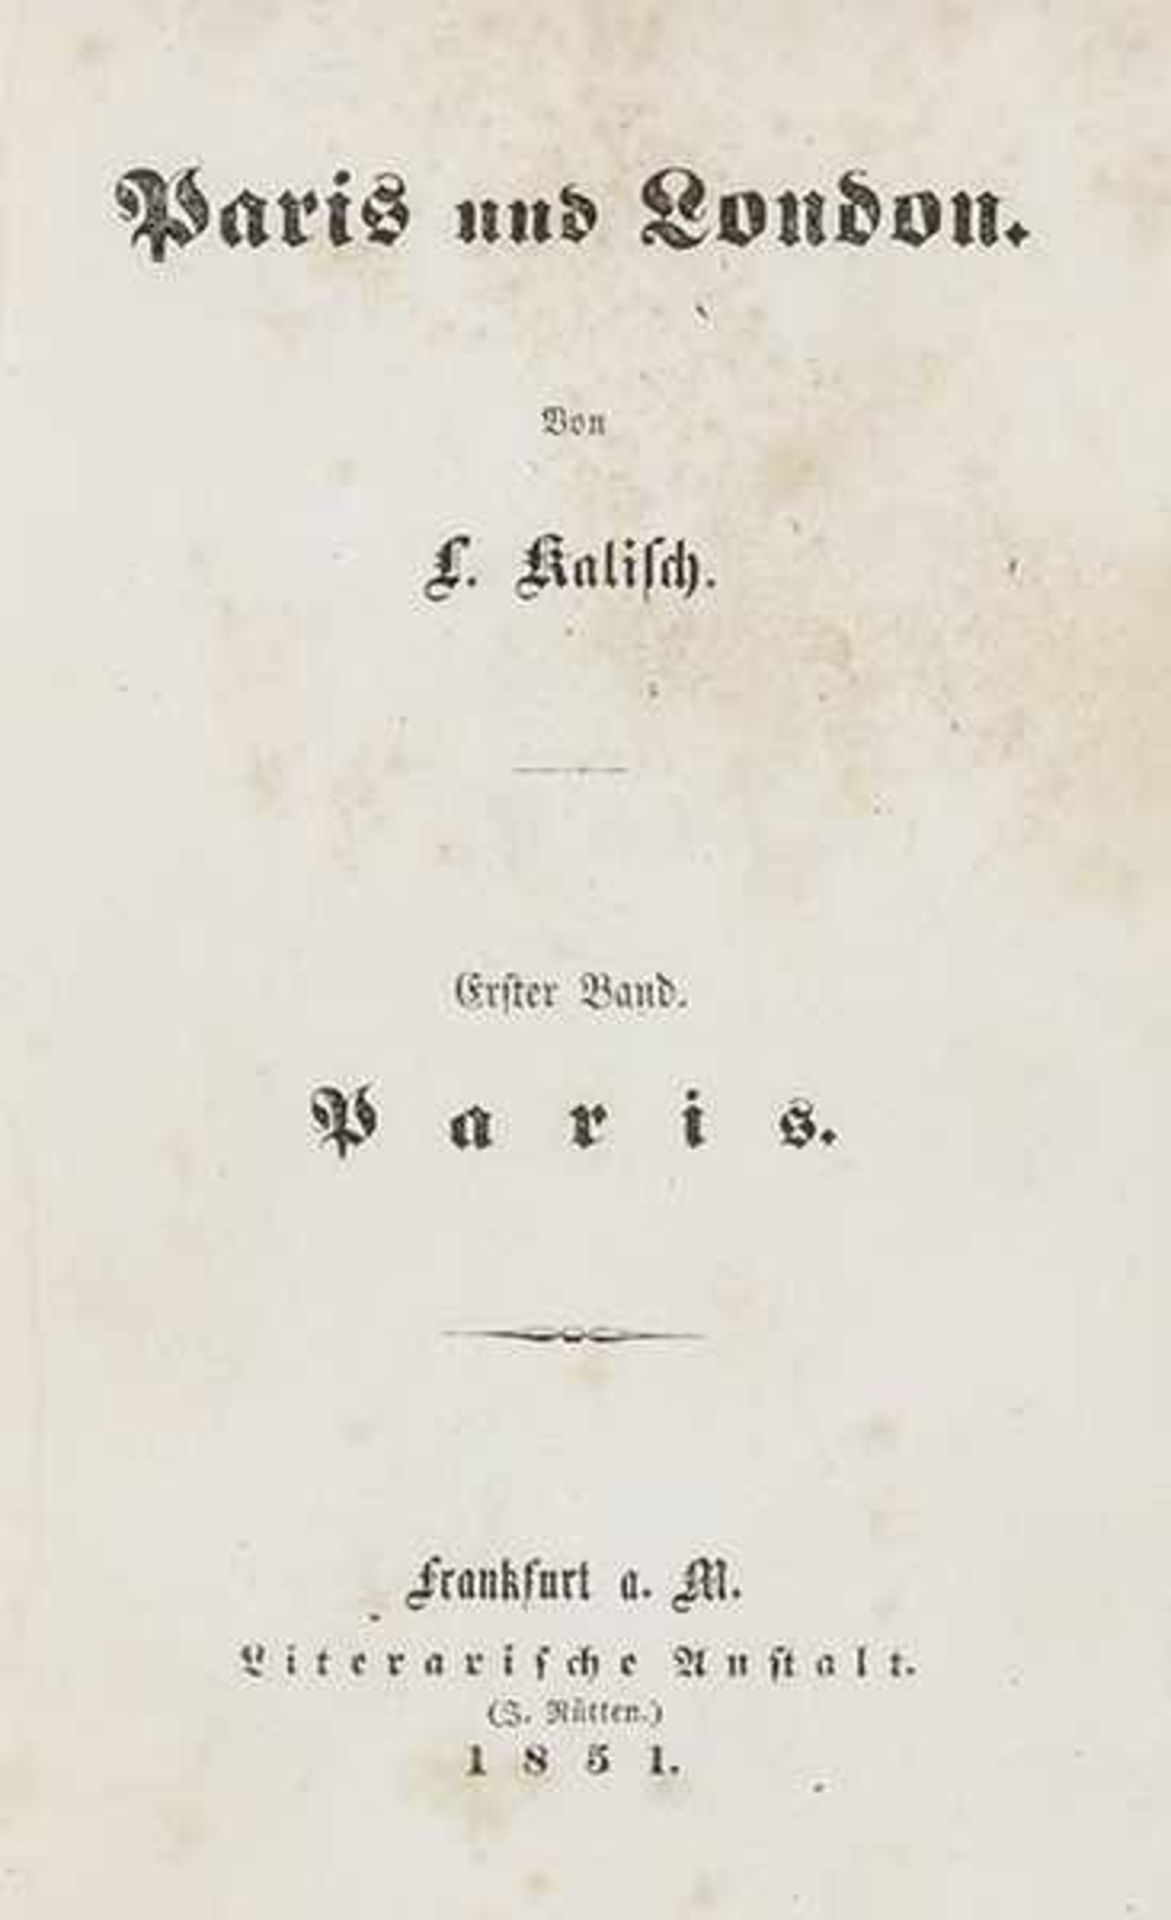 Kalisch, Ludwig. Paris und London. 2 Teile in 1 Band. Frankfurt, Rütten, 1851. VI, 265 S., 3 Bl.,